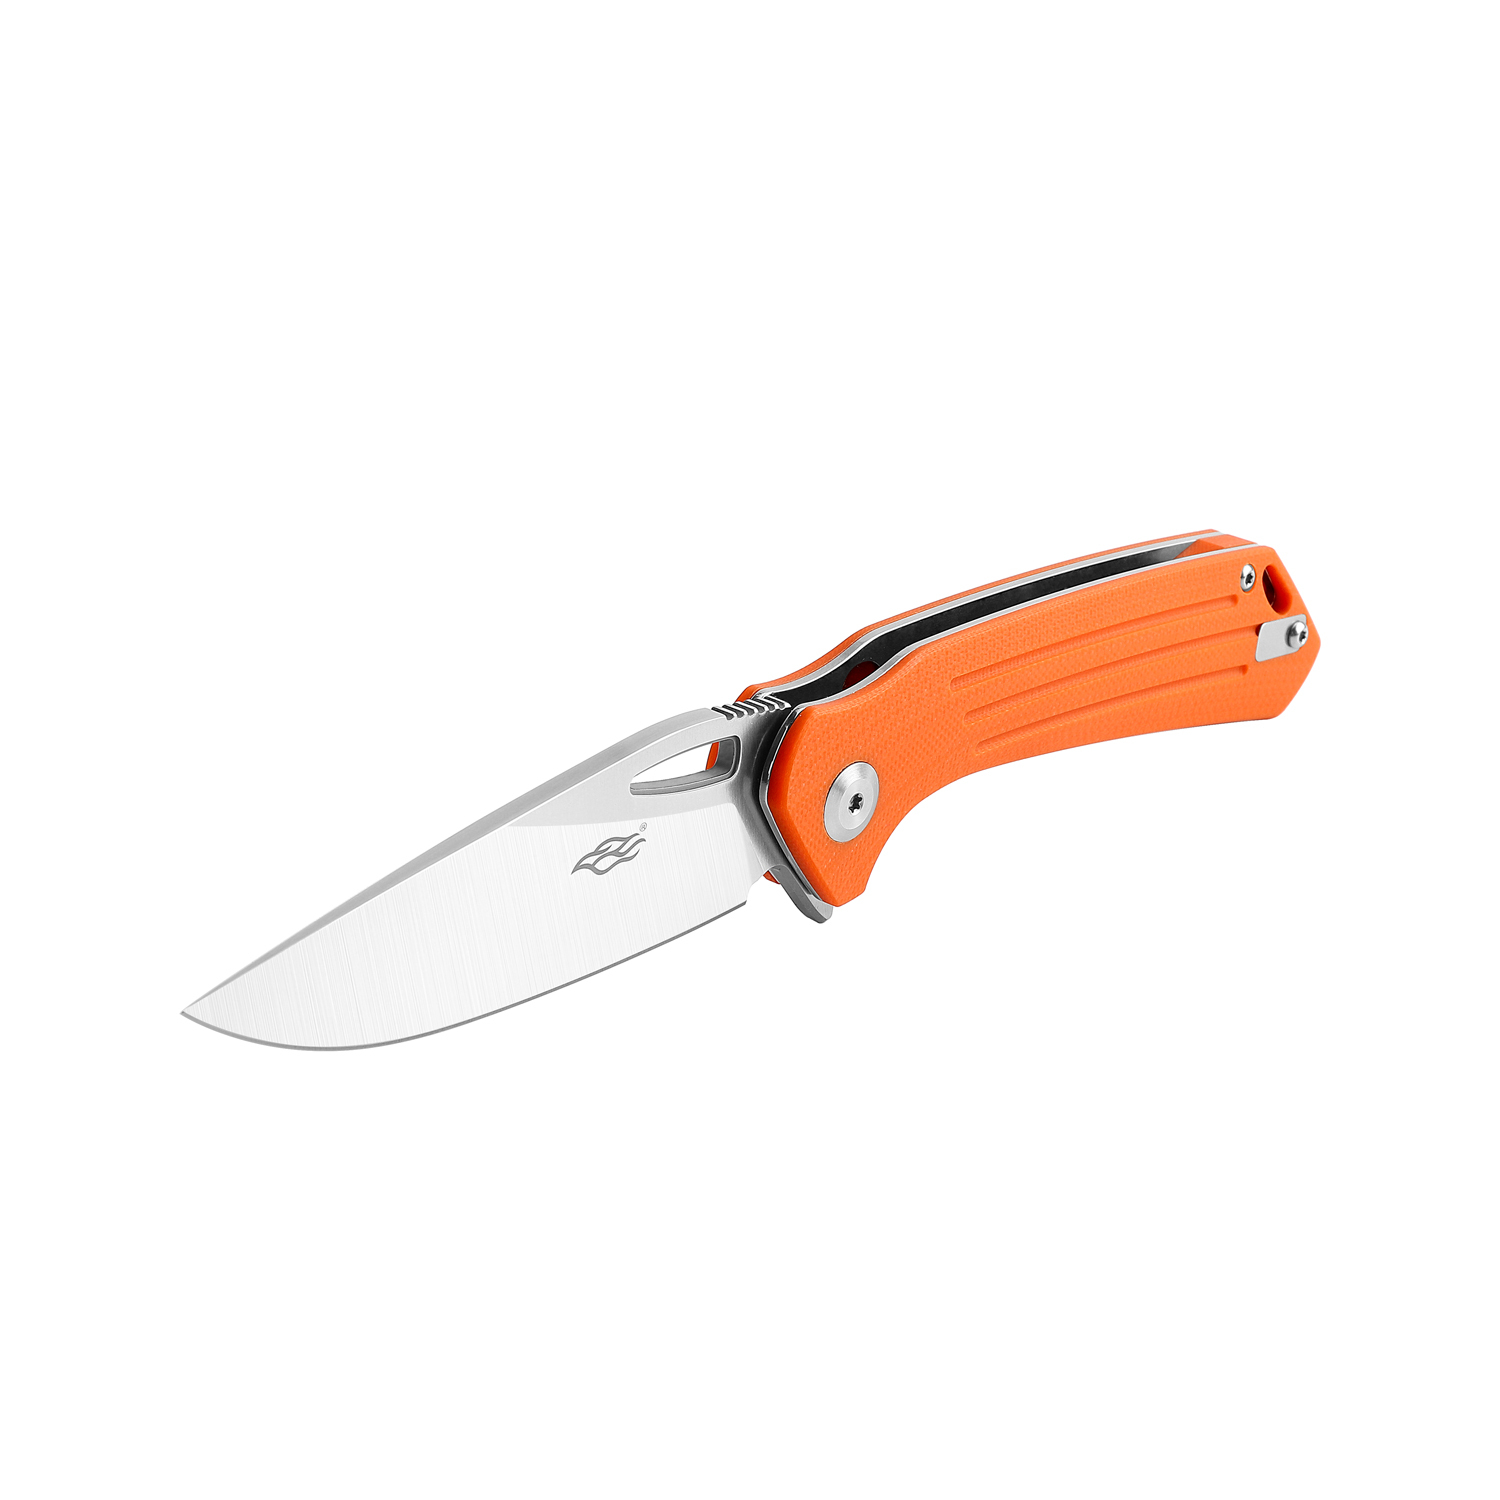 Складной нож Firebird FH921-OR, сталь D2, рукоять G10 оранжевая - фото 3